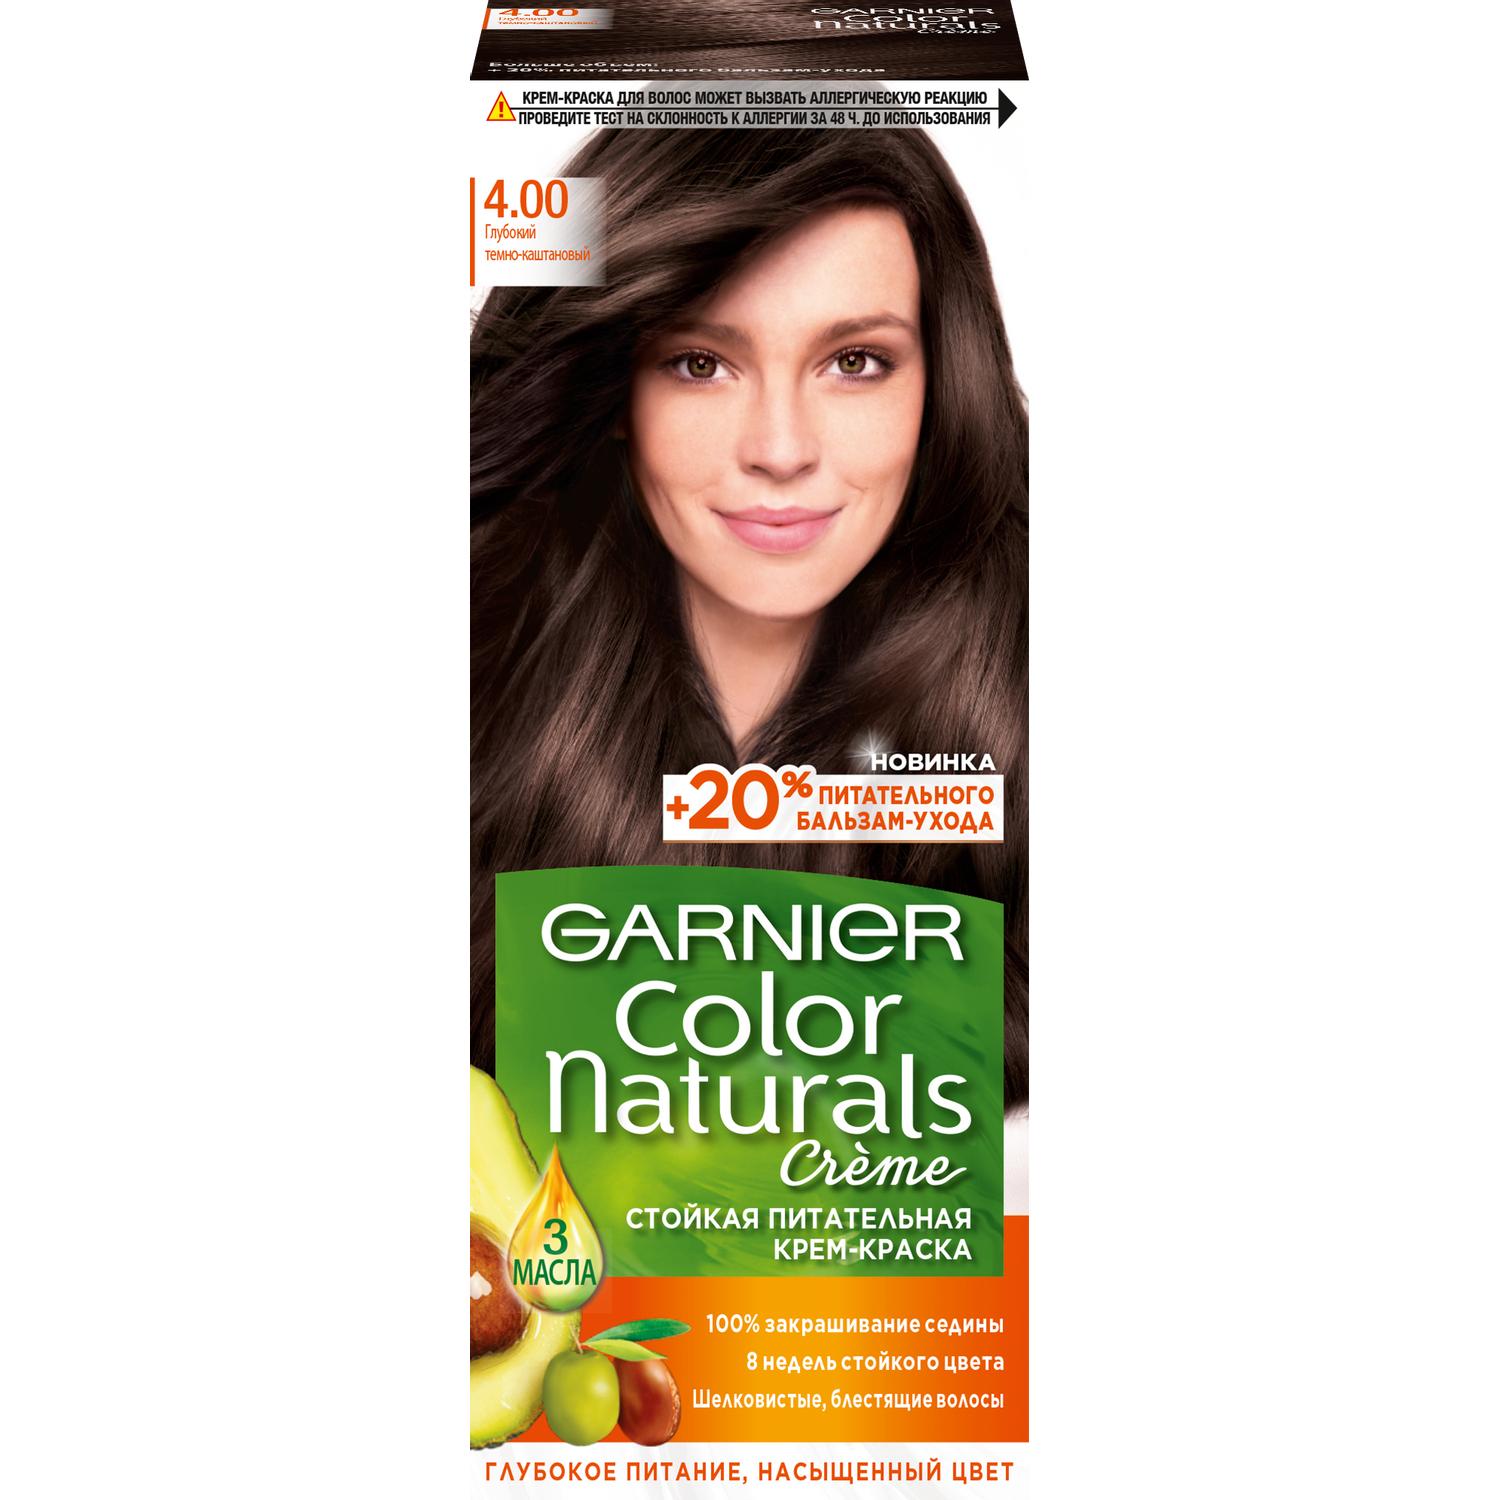 Крем-краска для волос Garnier Color Naturals 4.00 Глубокий темно-каштановый 110 мл крем краска для волос garnier color naturals 4 1 2 горький шоколад 110 мл